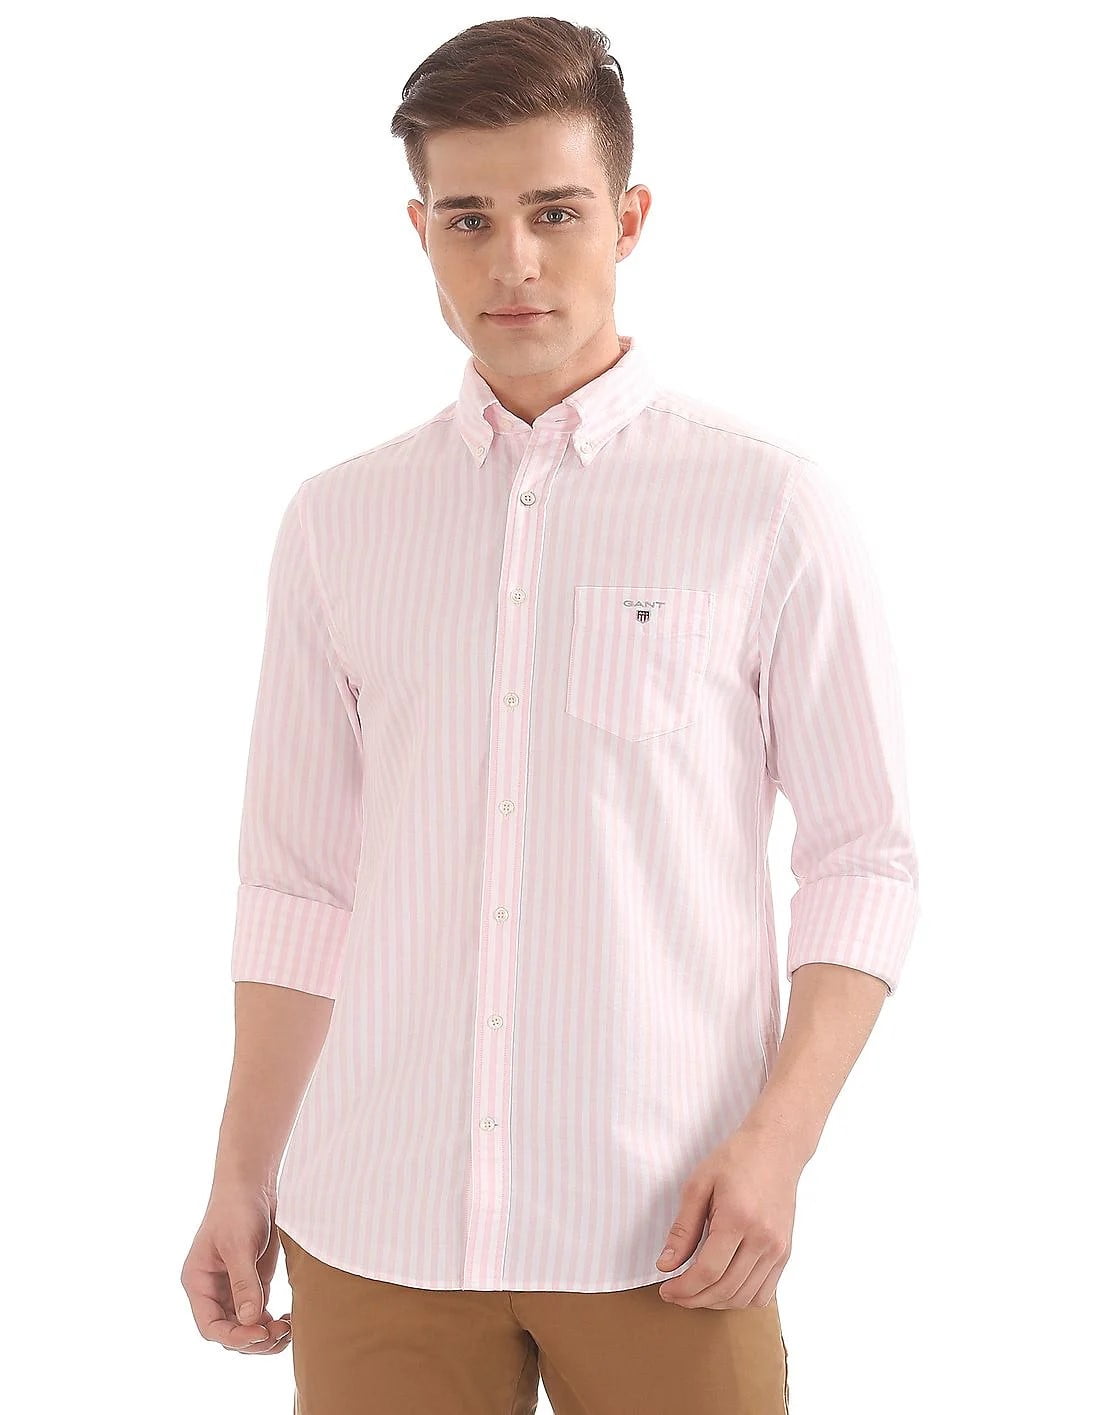 GANT Men's Light Pink Regular Fit Oxford Banker Shirt 3041100 Size ...